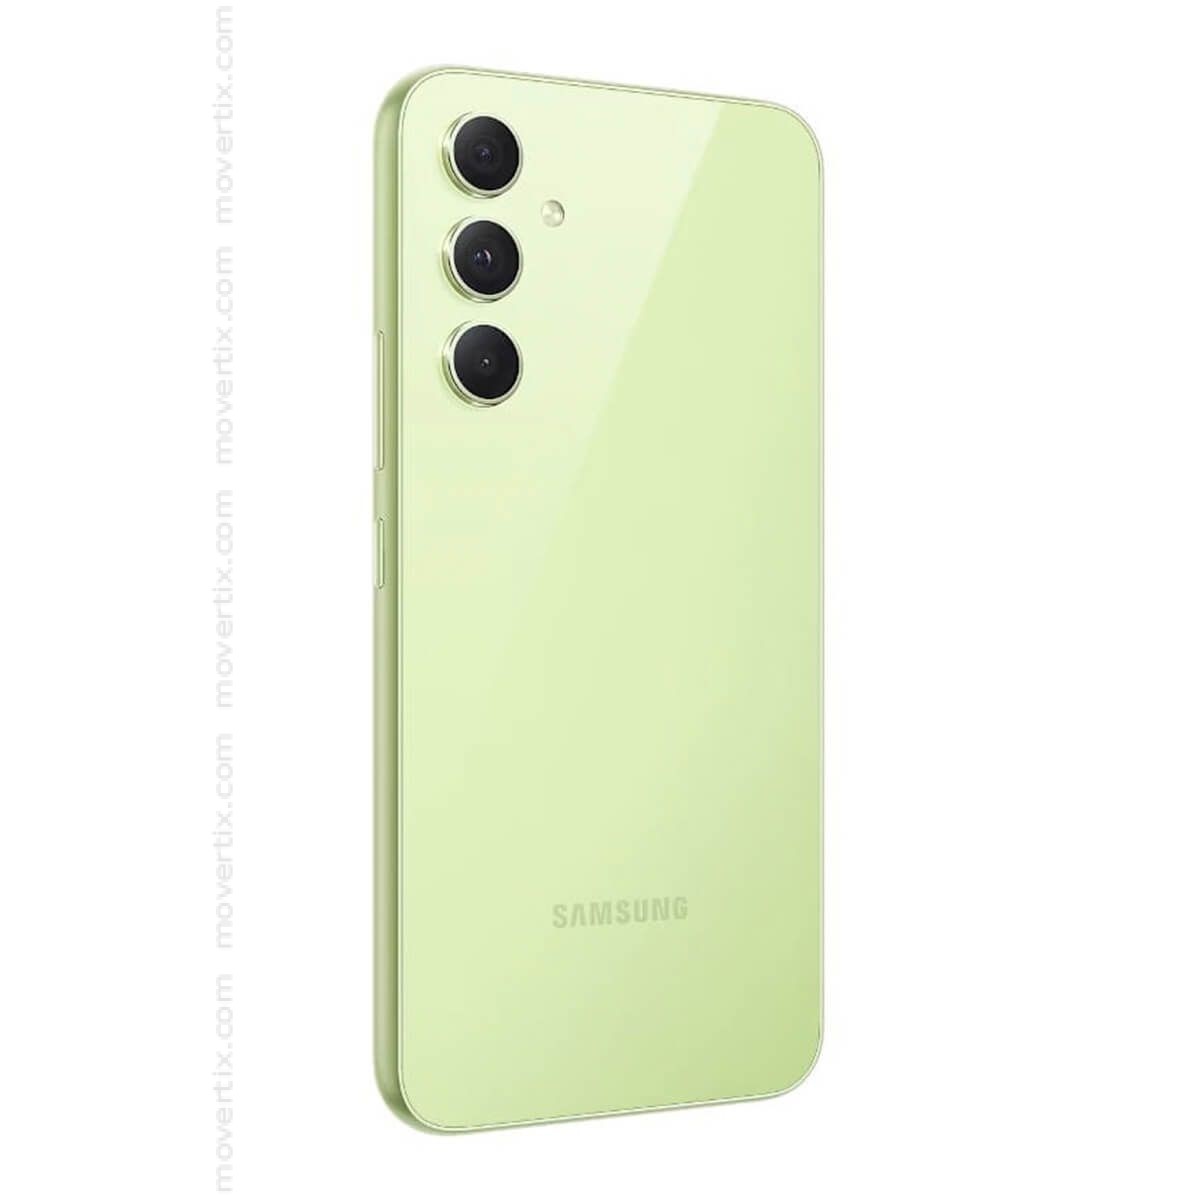 Samsung Galaxy A54 5g Smartphone 8gb 256gb Exynos 1380 6.4 Super, samsung  samsung a54 